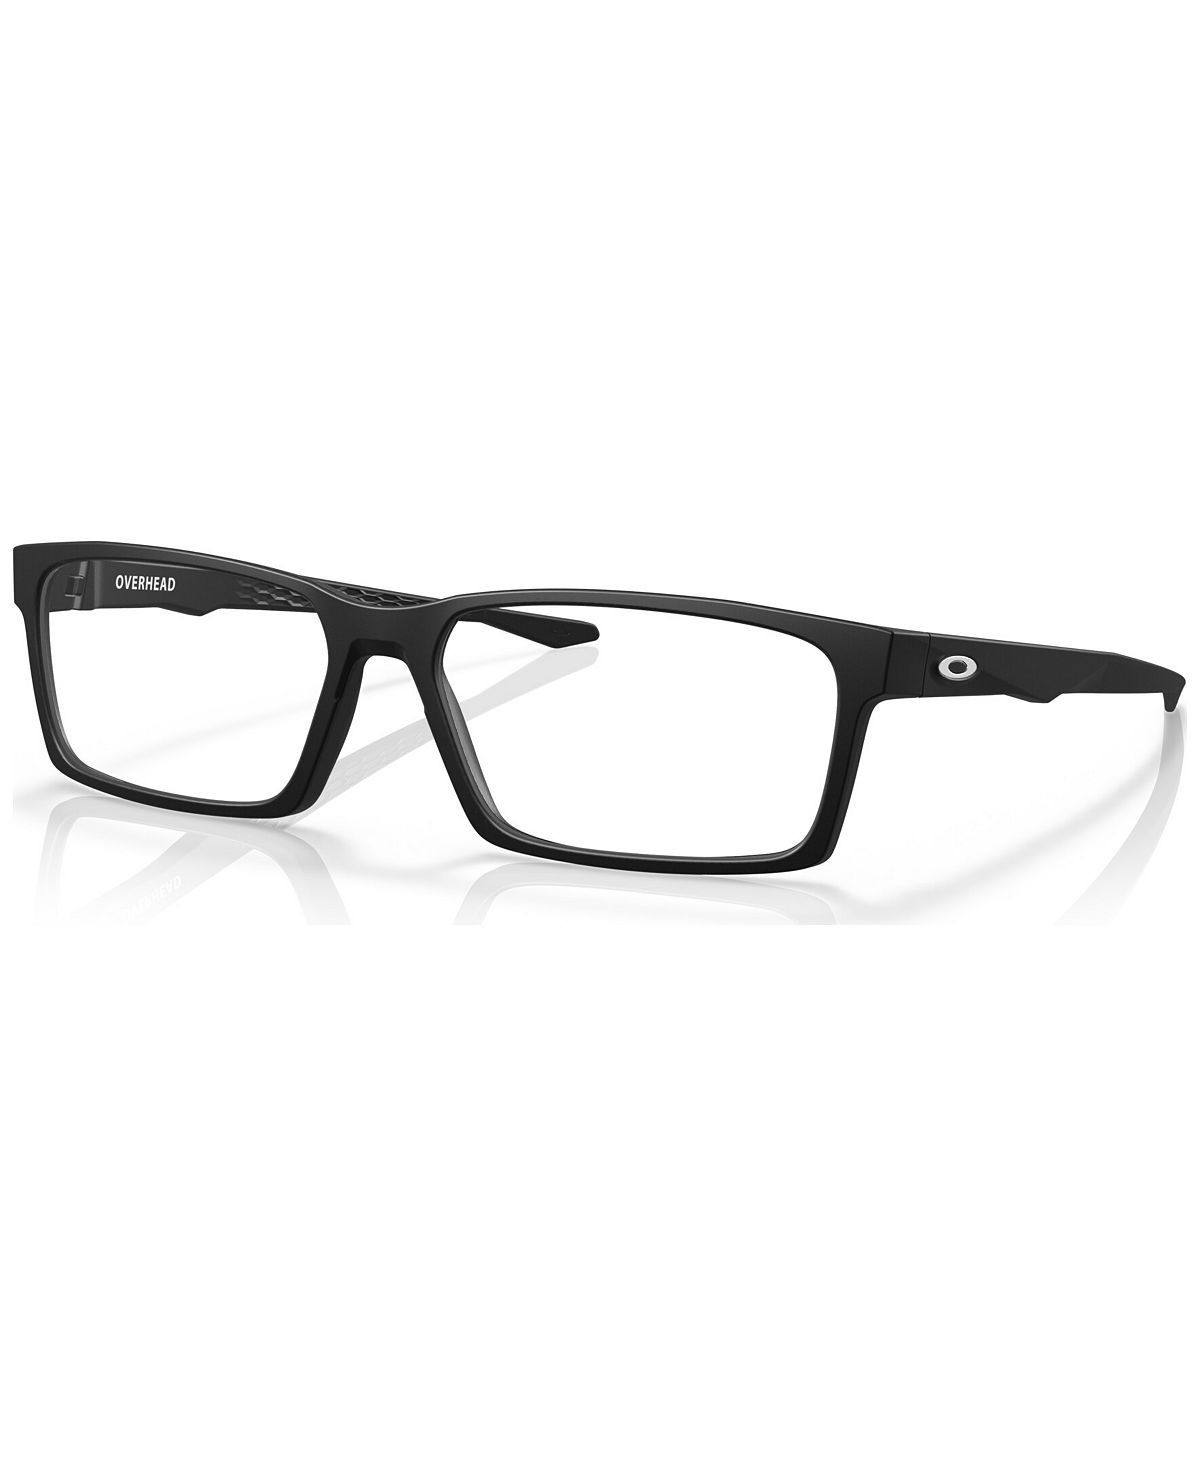 Мужские прямоугольные очки, OX8060 59 Oakley